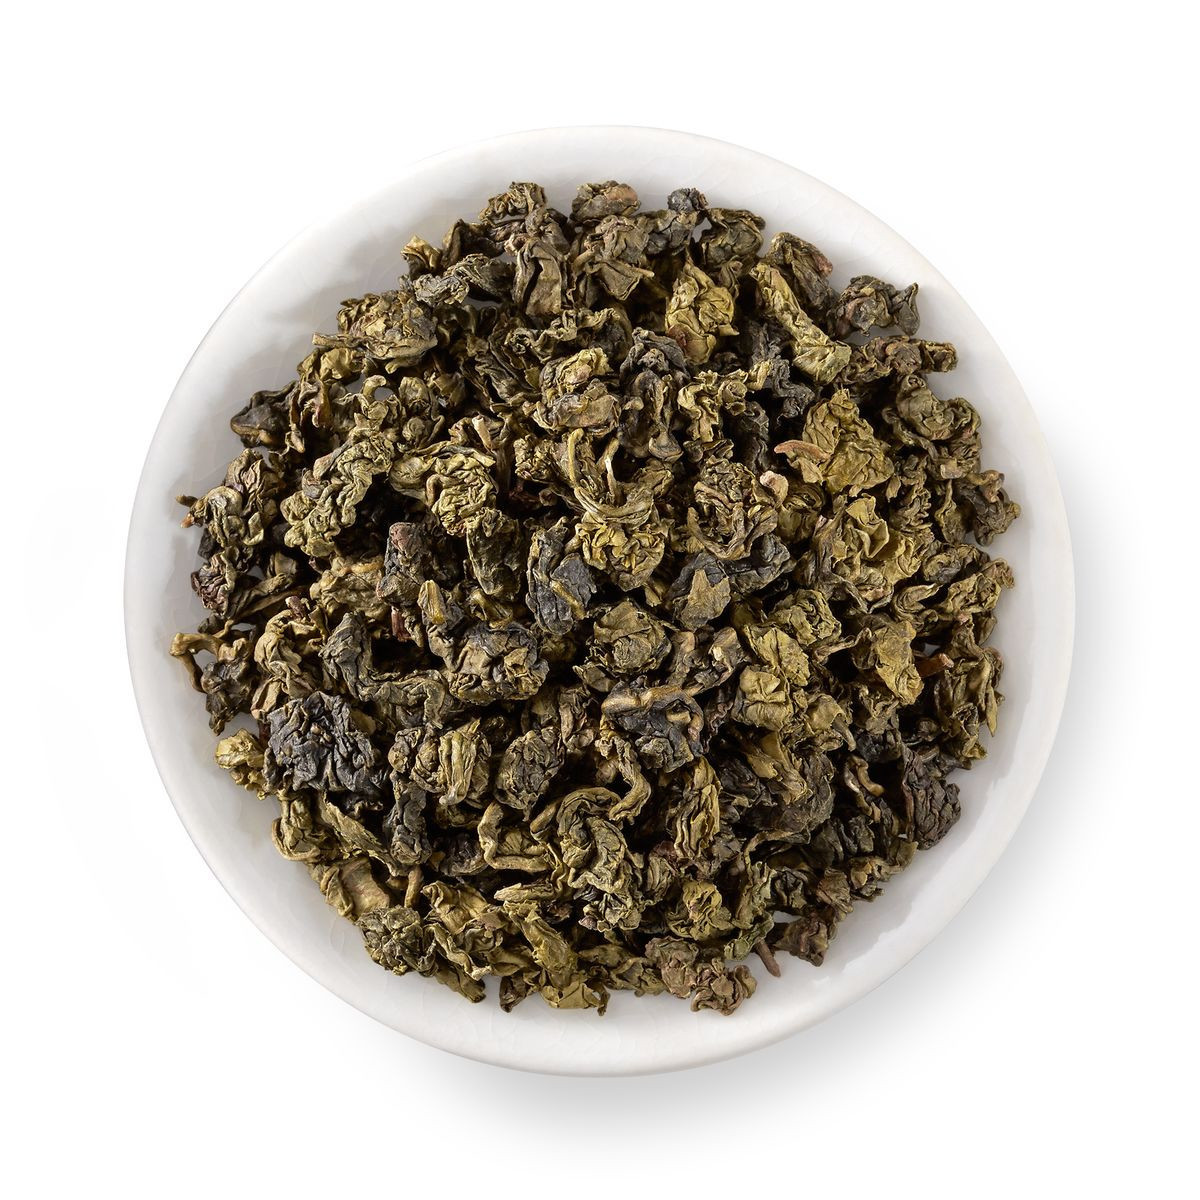 arizona green tea keep fit tea suppliers sheng puer tea astringency harsh